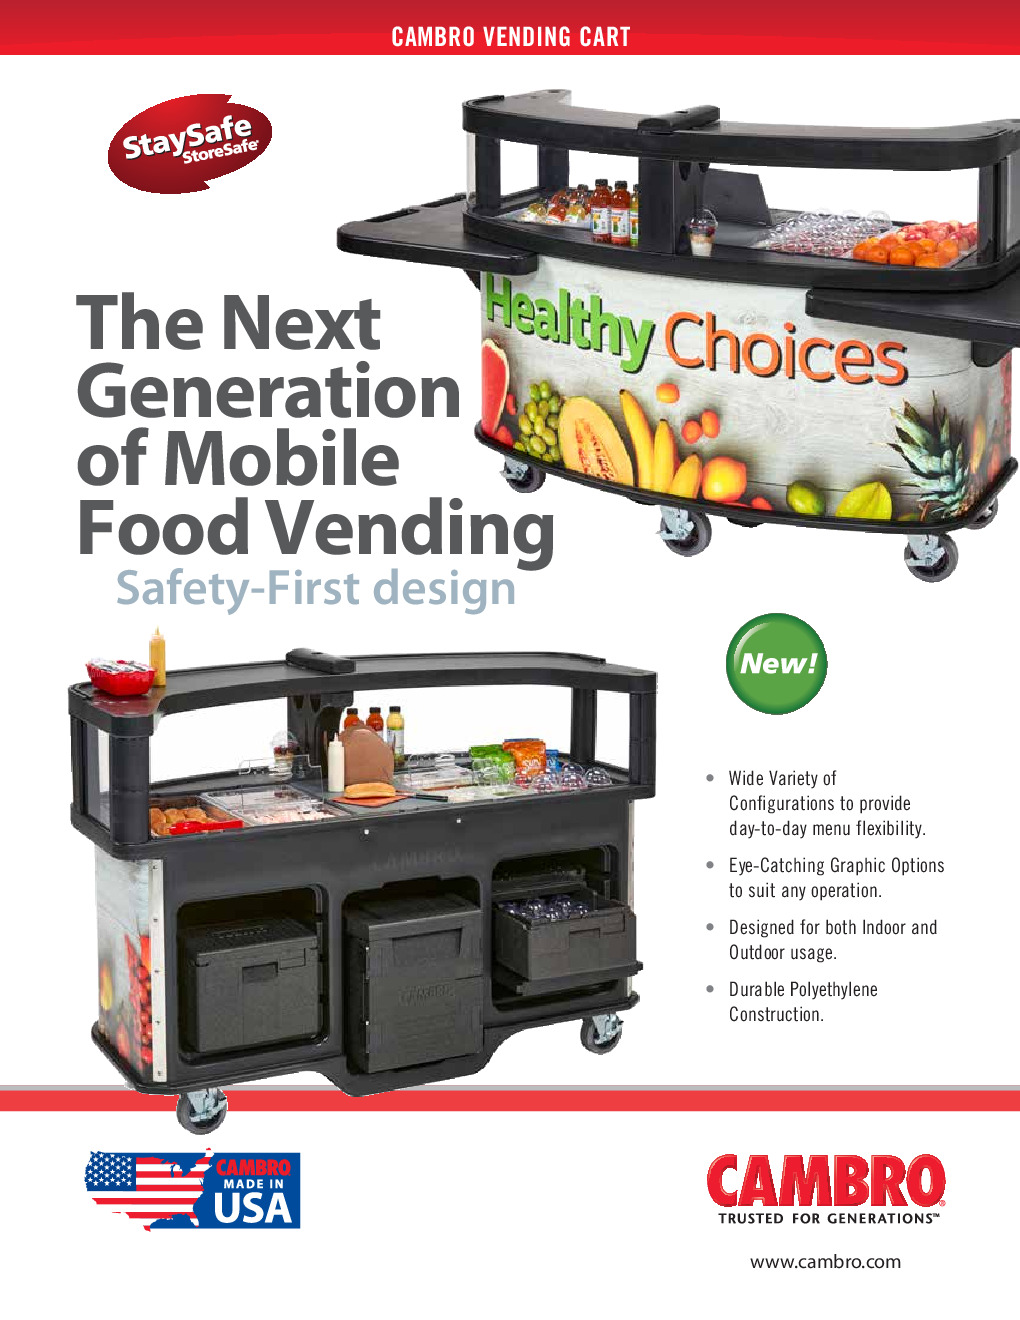 Cambro CVC75BW15 Vending Merchandising Kiosk